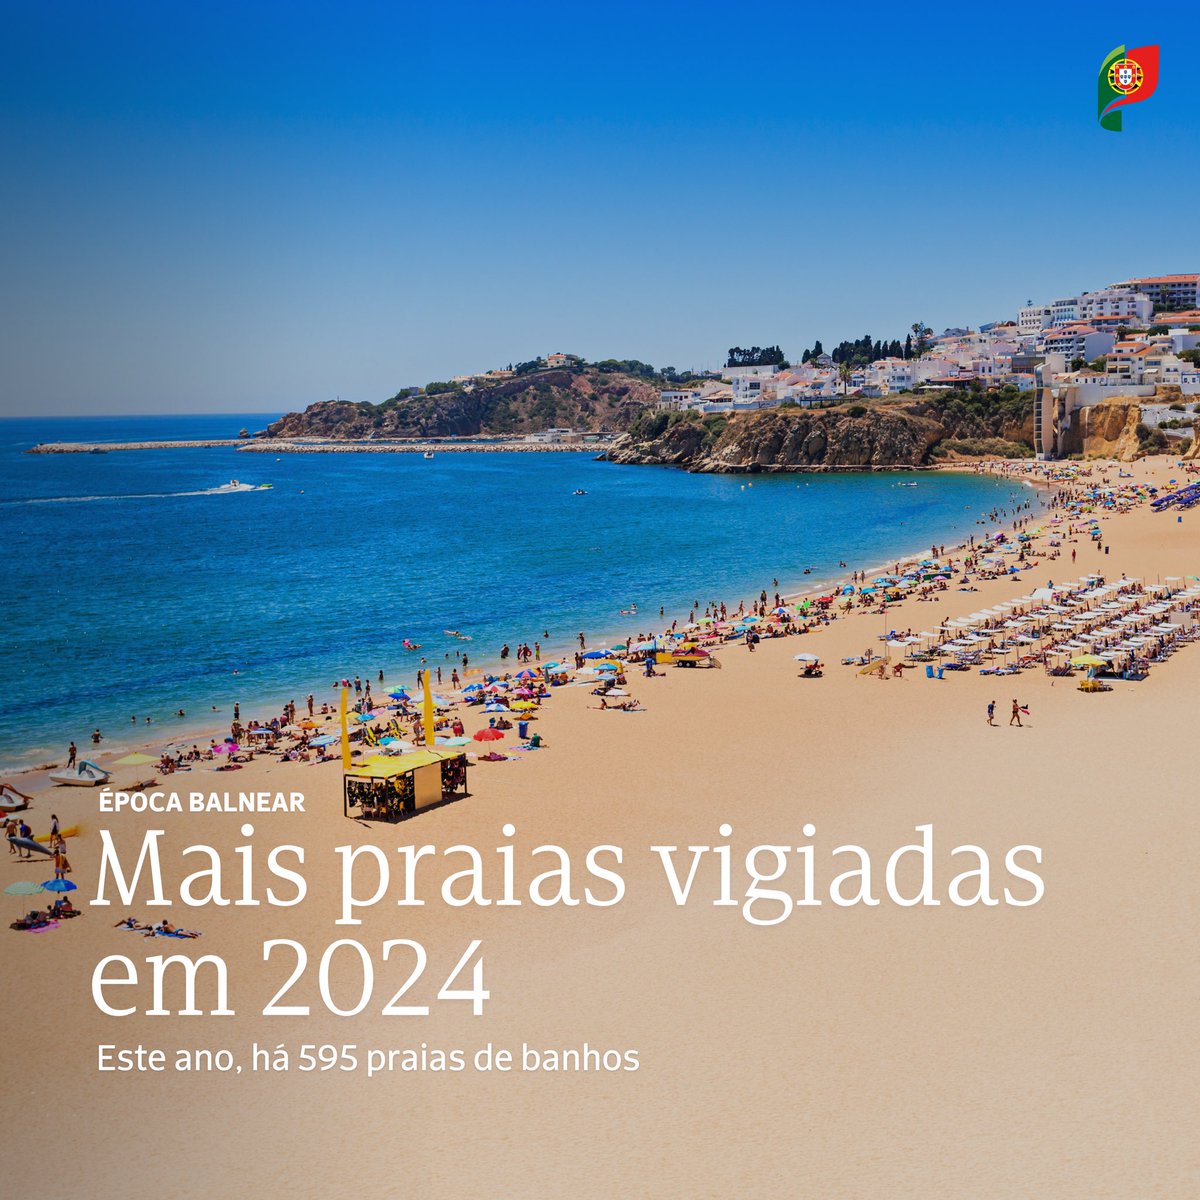 Portugal vai contar com 595 praias de banhos, mais seis do que no ano passado, segundo a portaria publicada em Diário da República. #ÉpocaBalnear #Praias